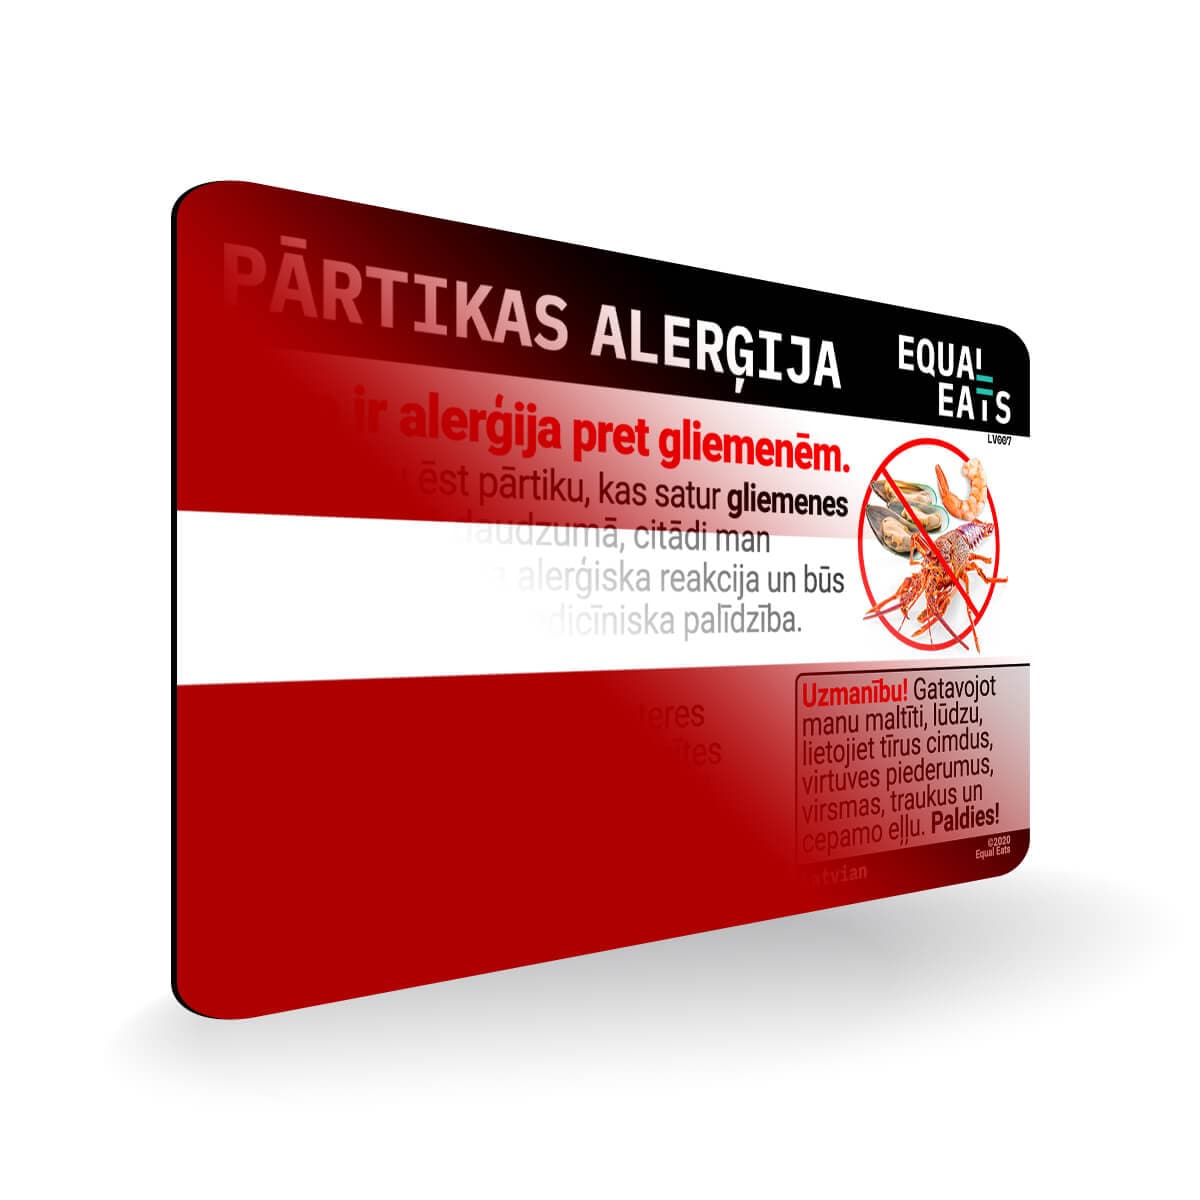 Shellfish Allergy in Latvian. Shellfish Allergy Card for Latvia